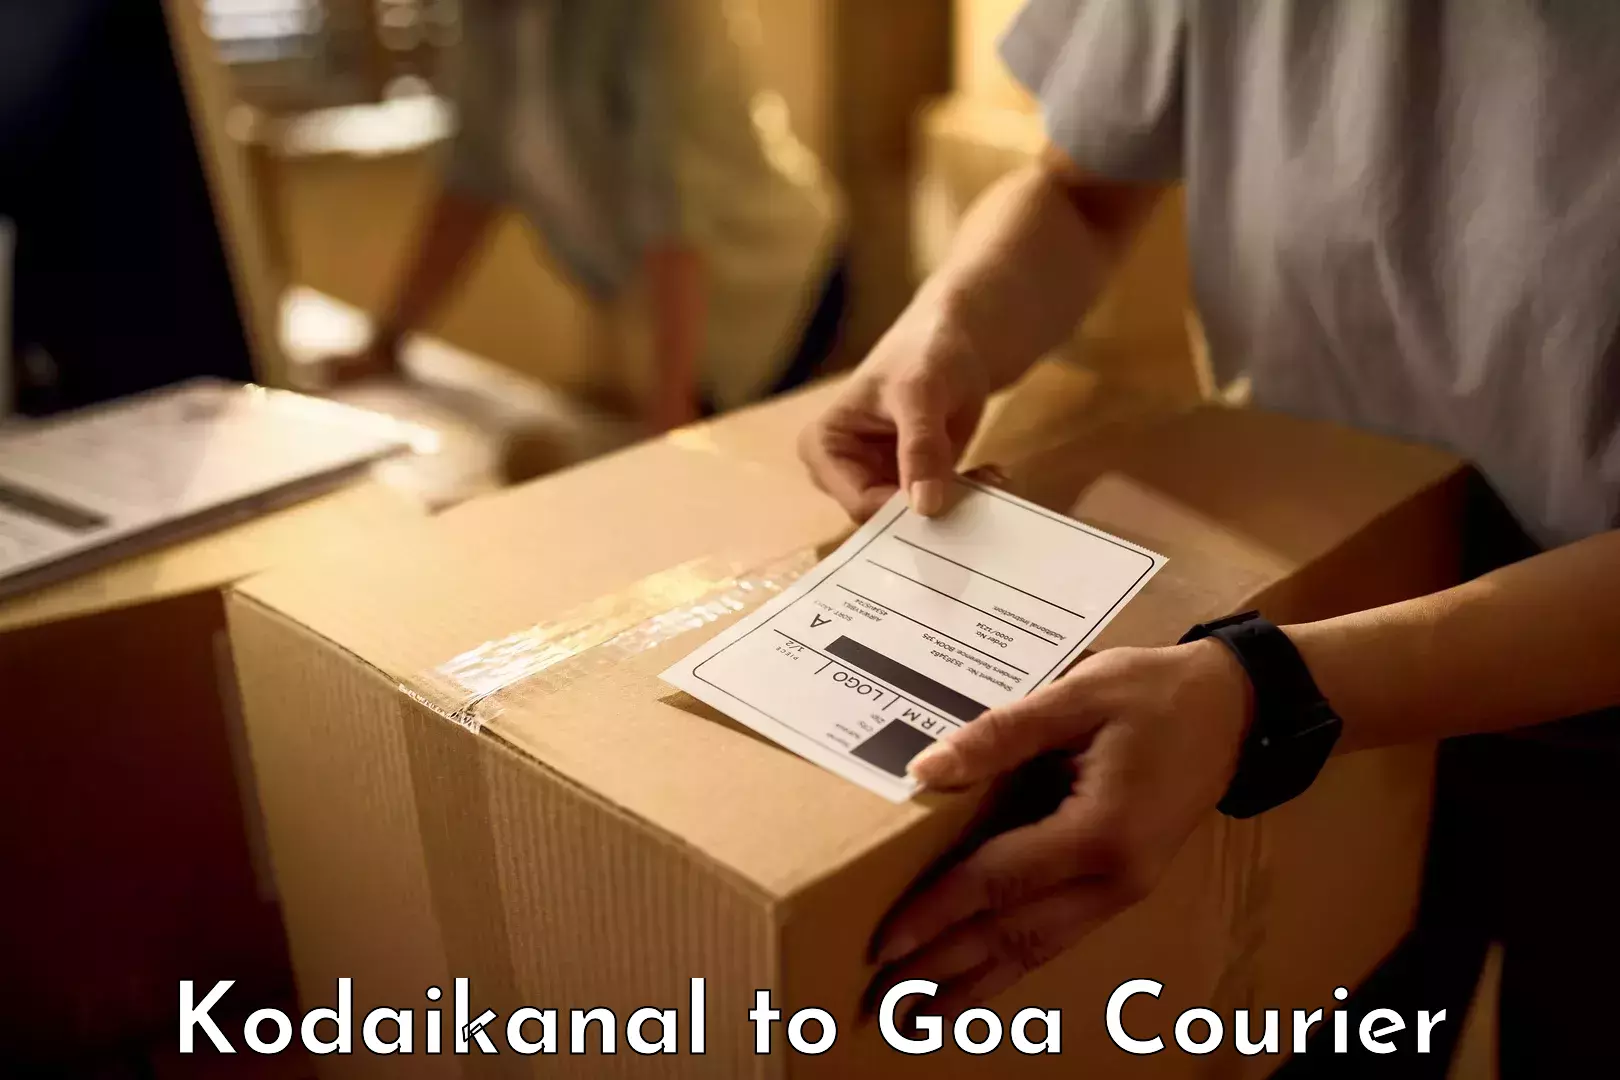 Luggage shipment specialists Kodaikanal to Ponda